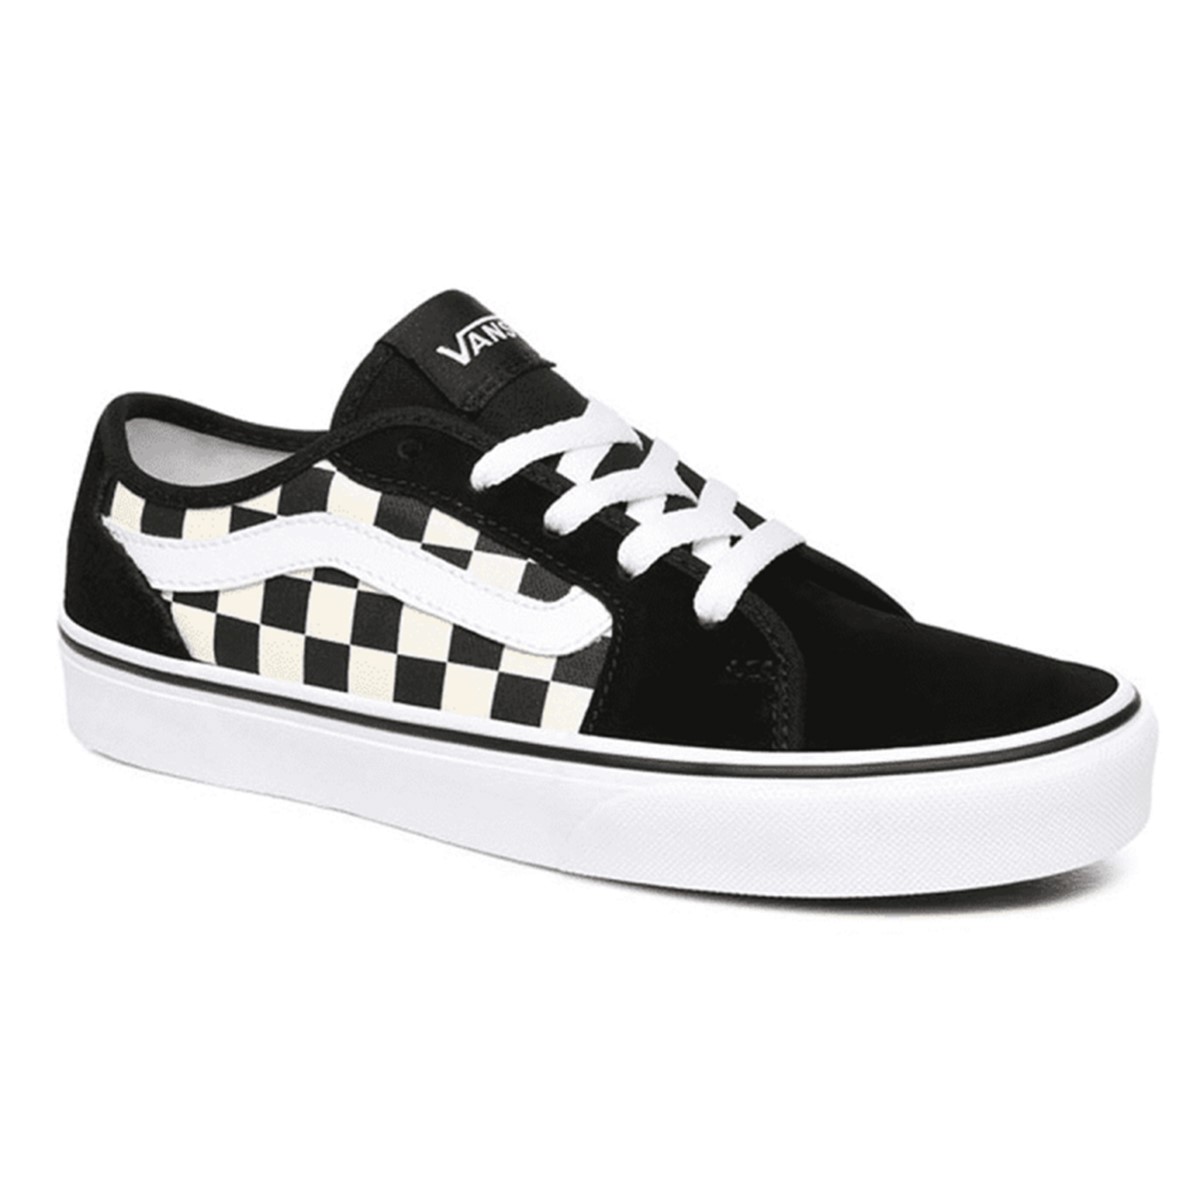 Vans Kadın Ayakkabı VN0A45NM5GX1 (Checkerboard) Black/White